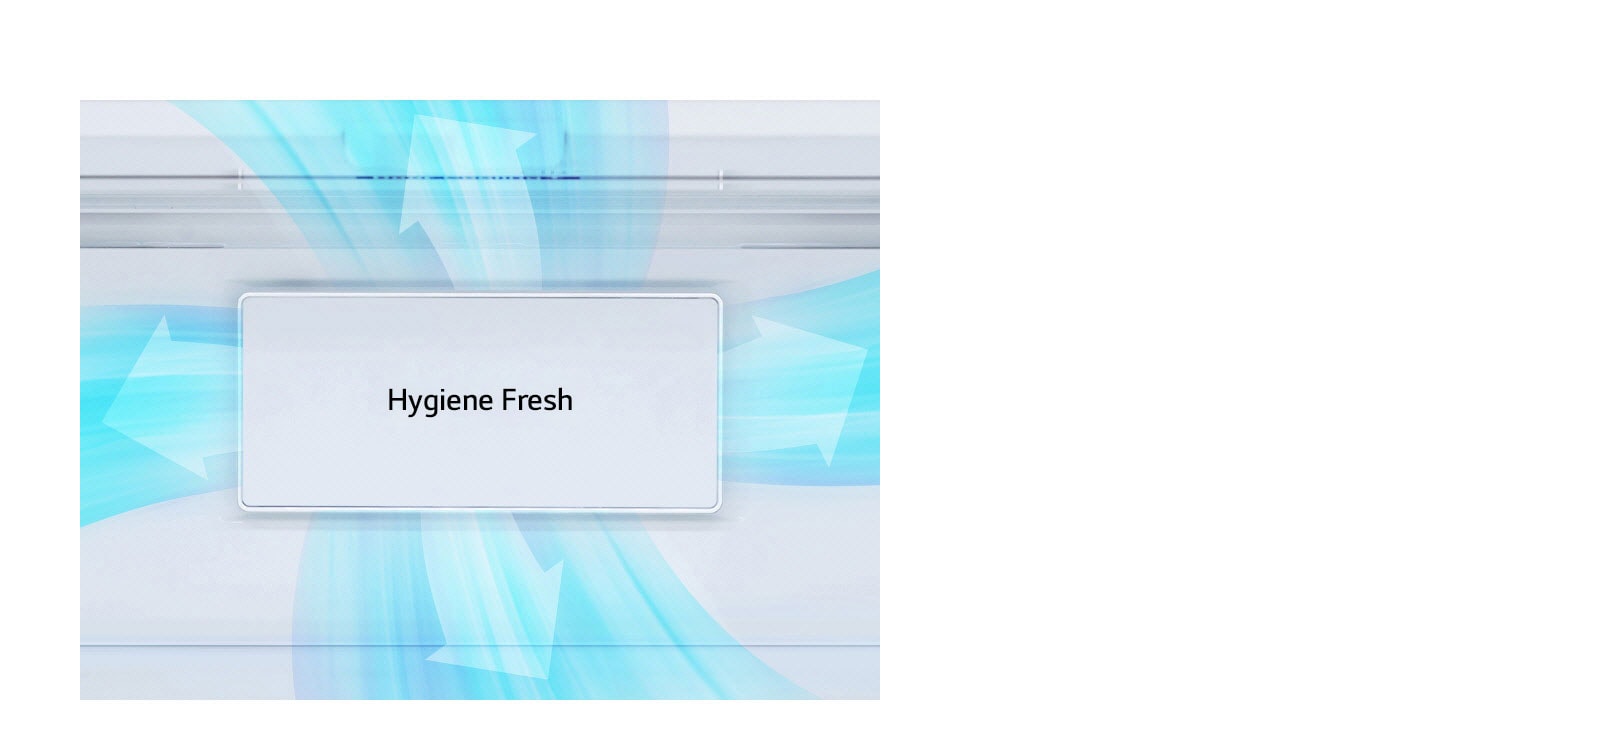 Giảm mùi khó chịu trong tủ lạnh nhờ Hygiene Fresh3